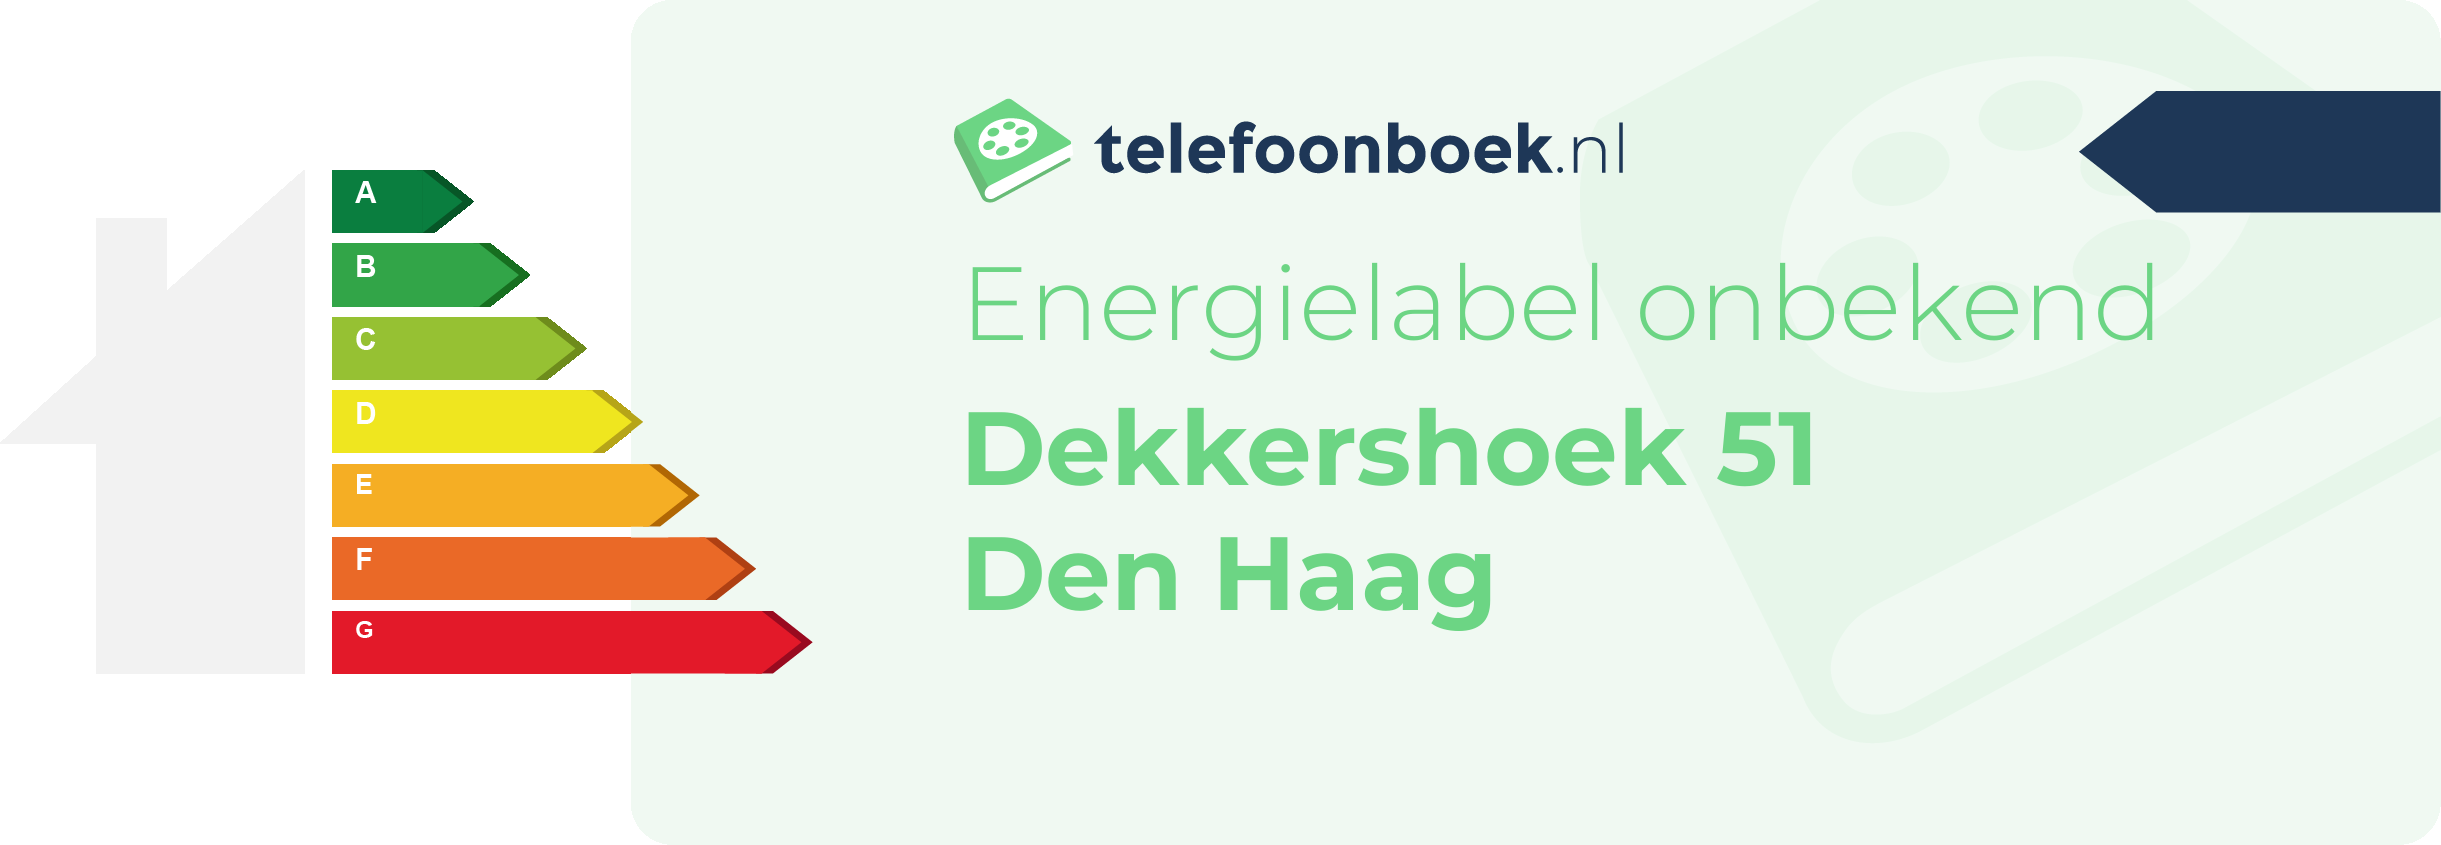 Energielabel Dekkershoek 51 Den Haag